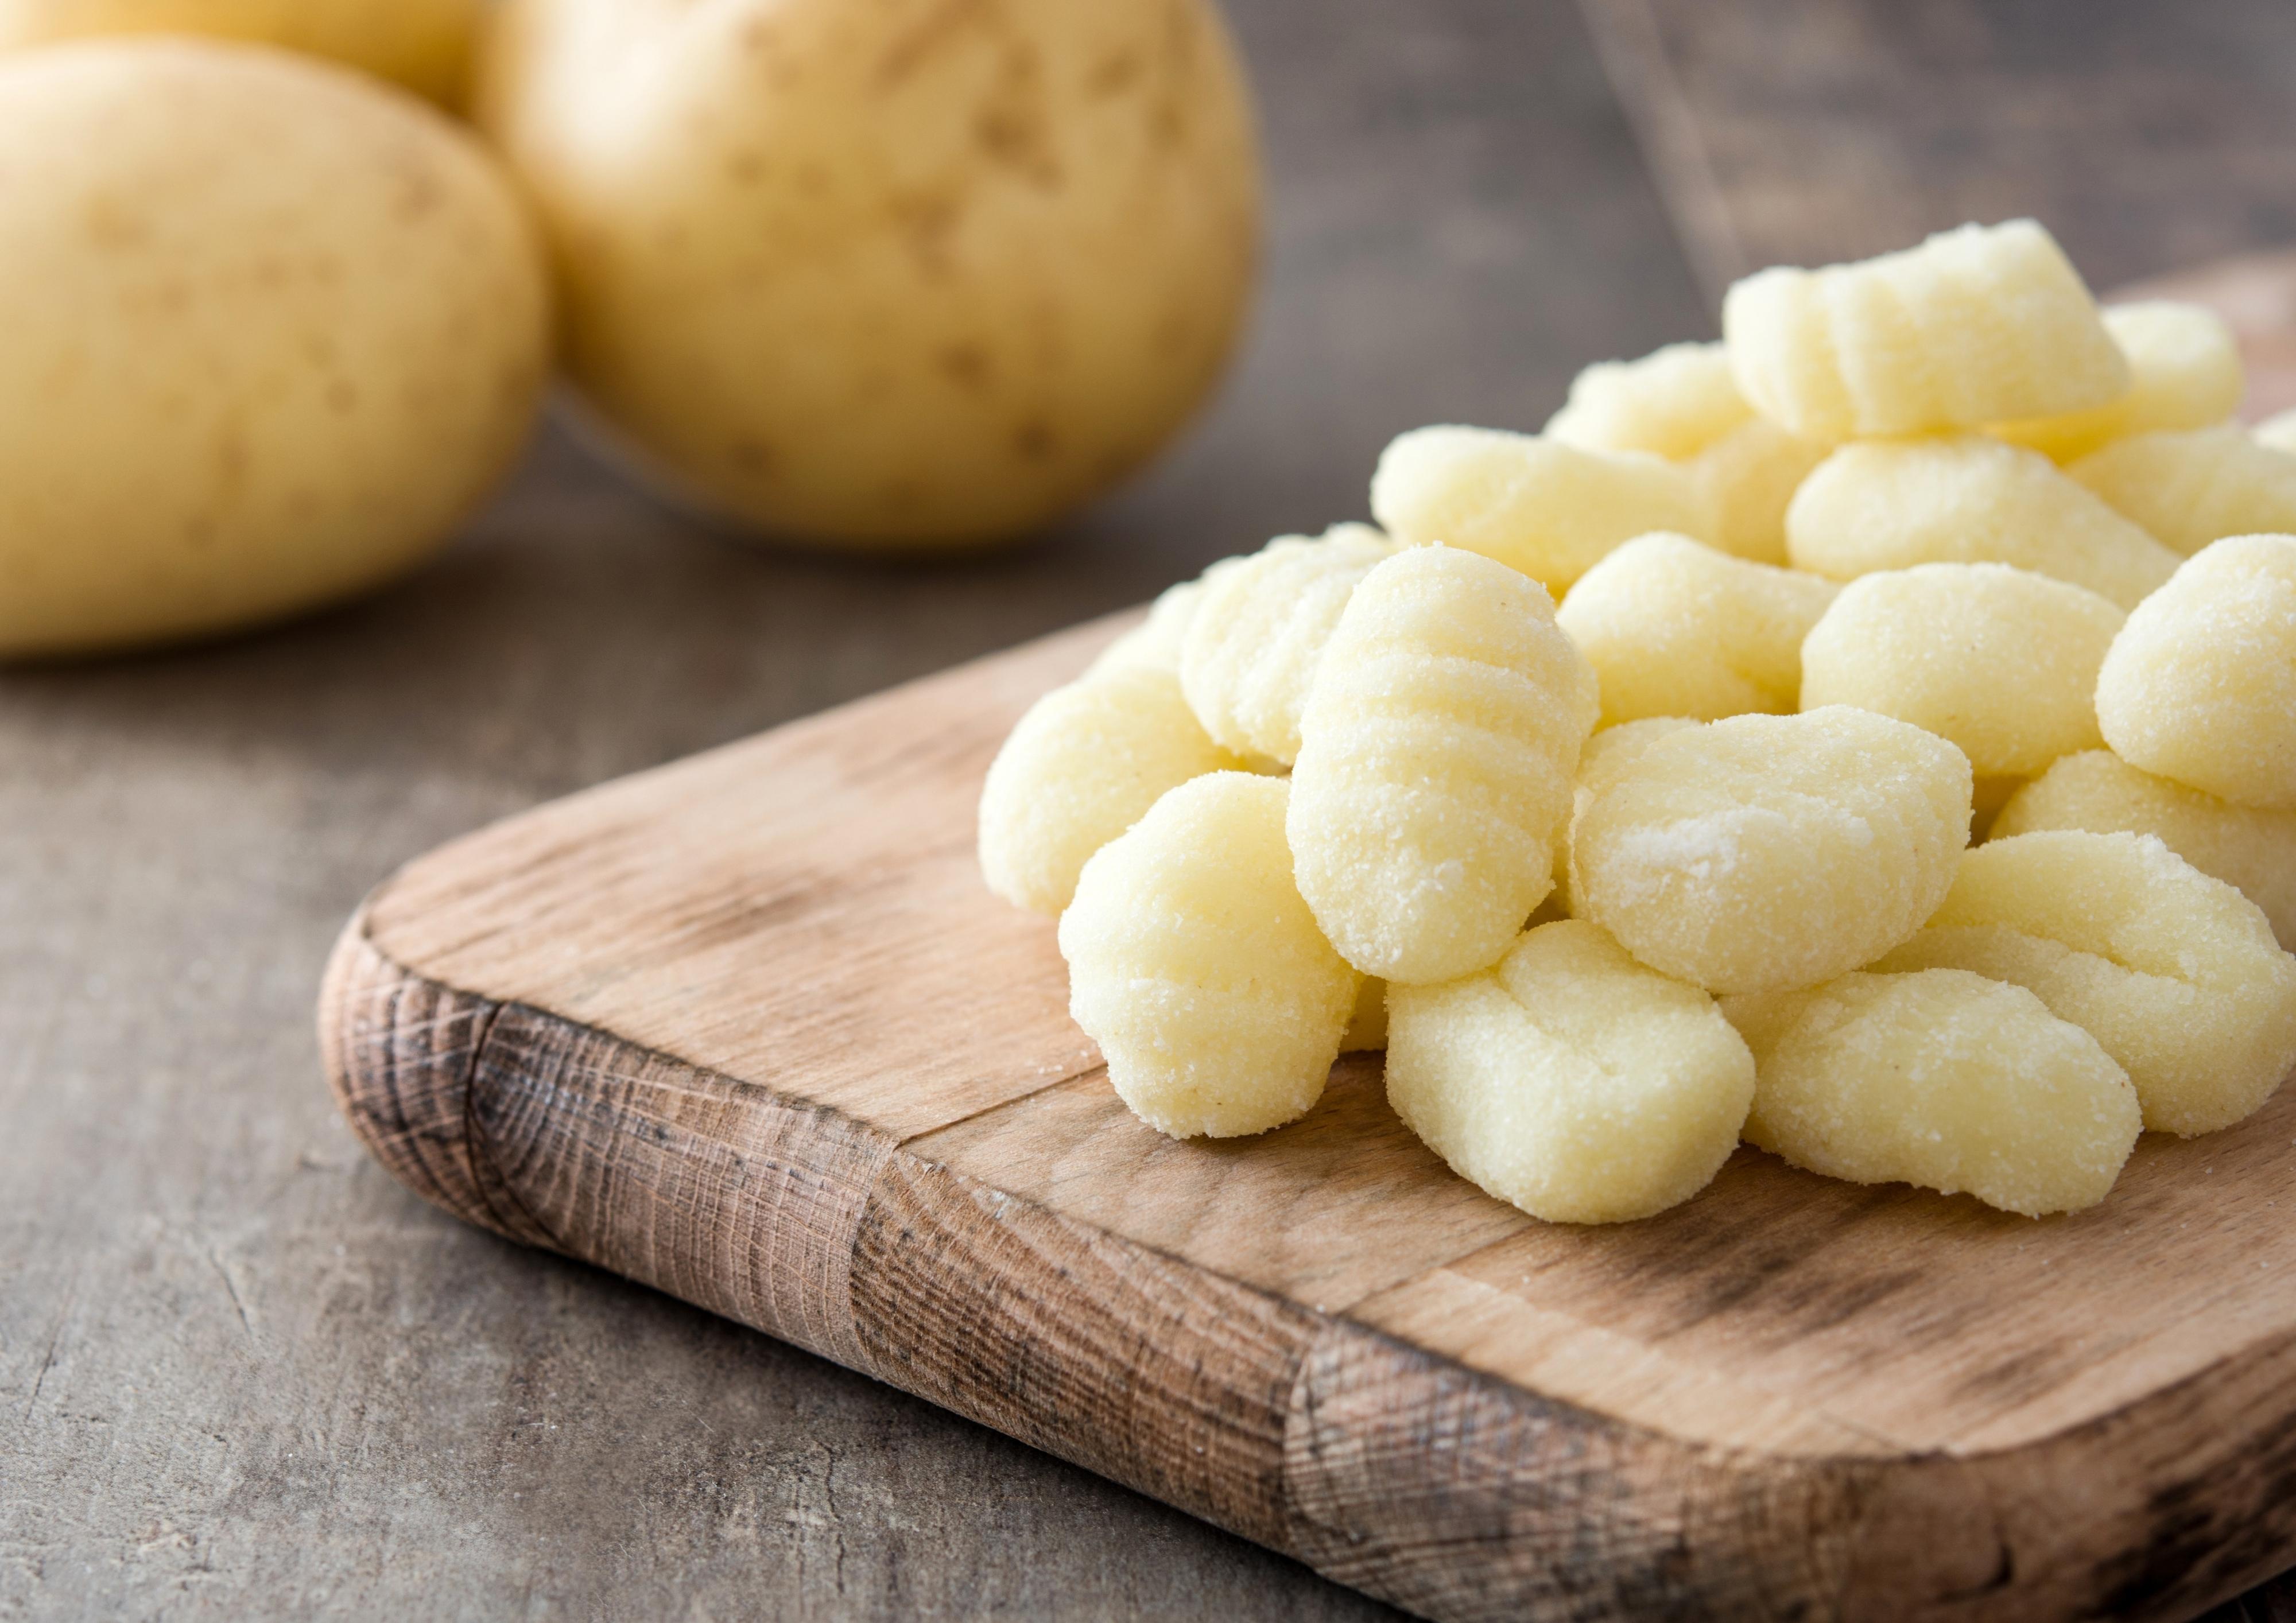 Gnocchi di patate, ecco come nasce l’antica ricetta